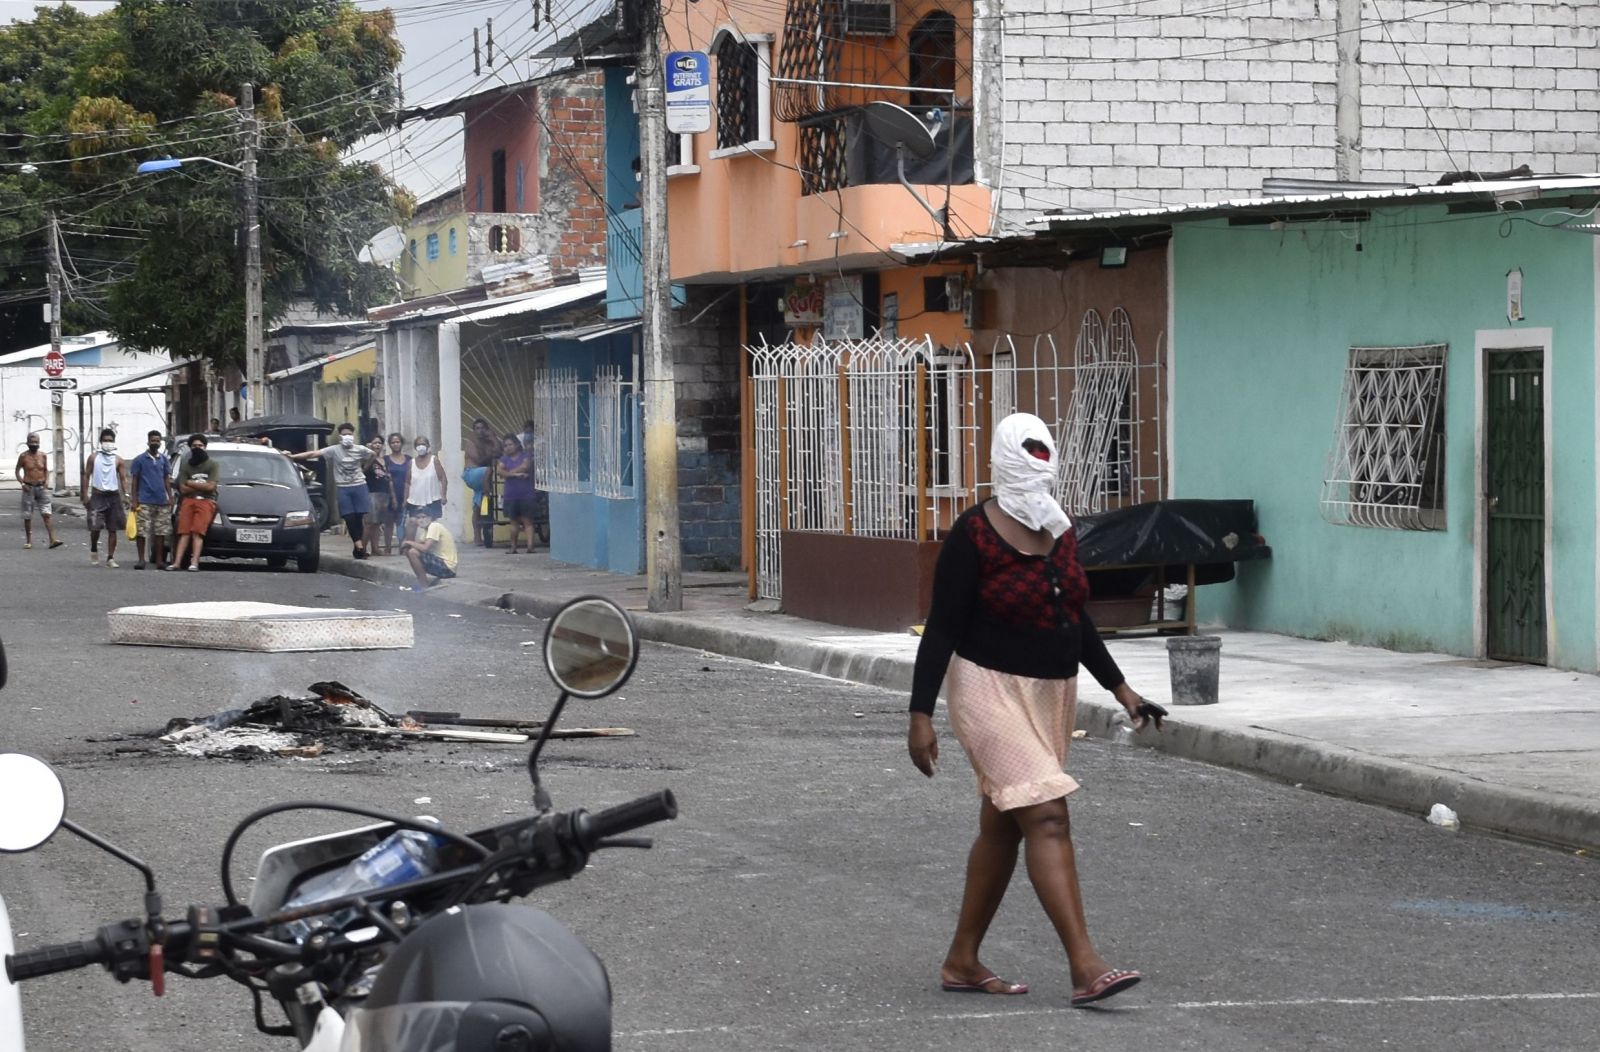 Mŕtve telá zabalené v čiernych vreciach sú často v Guayaquil odložené aj niekoľko dní na ulici.